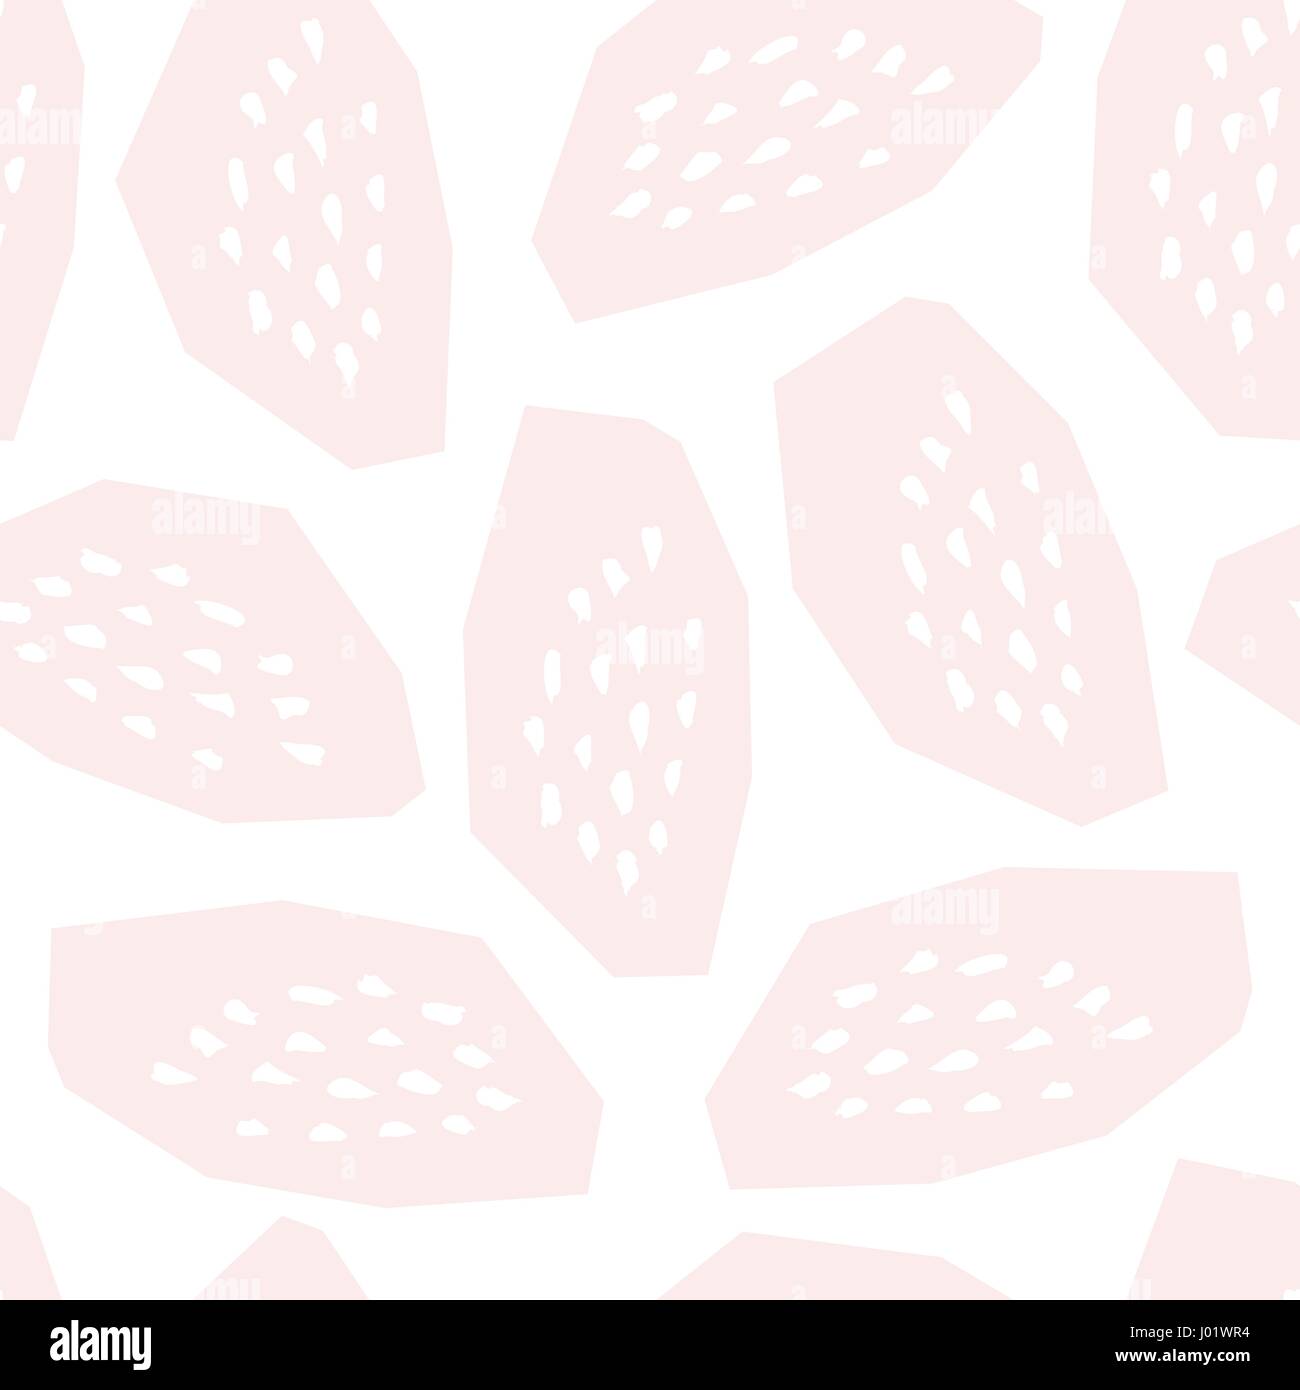 Nahtlose Muster mit strukturierten geometrischen Formen in Blush Pink und weiß. Abstrakter Stil Textil, Geschenkpapier, Wand-Kunst-Design. Stock Vektor